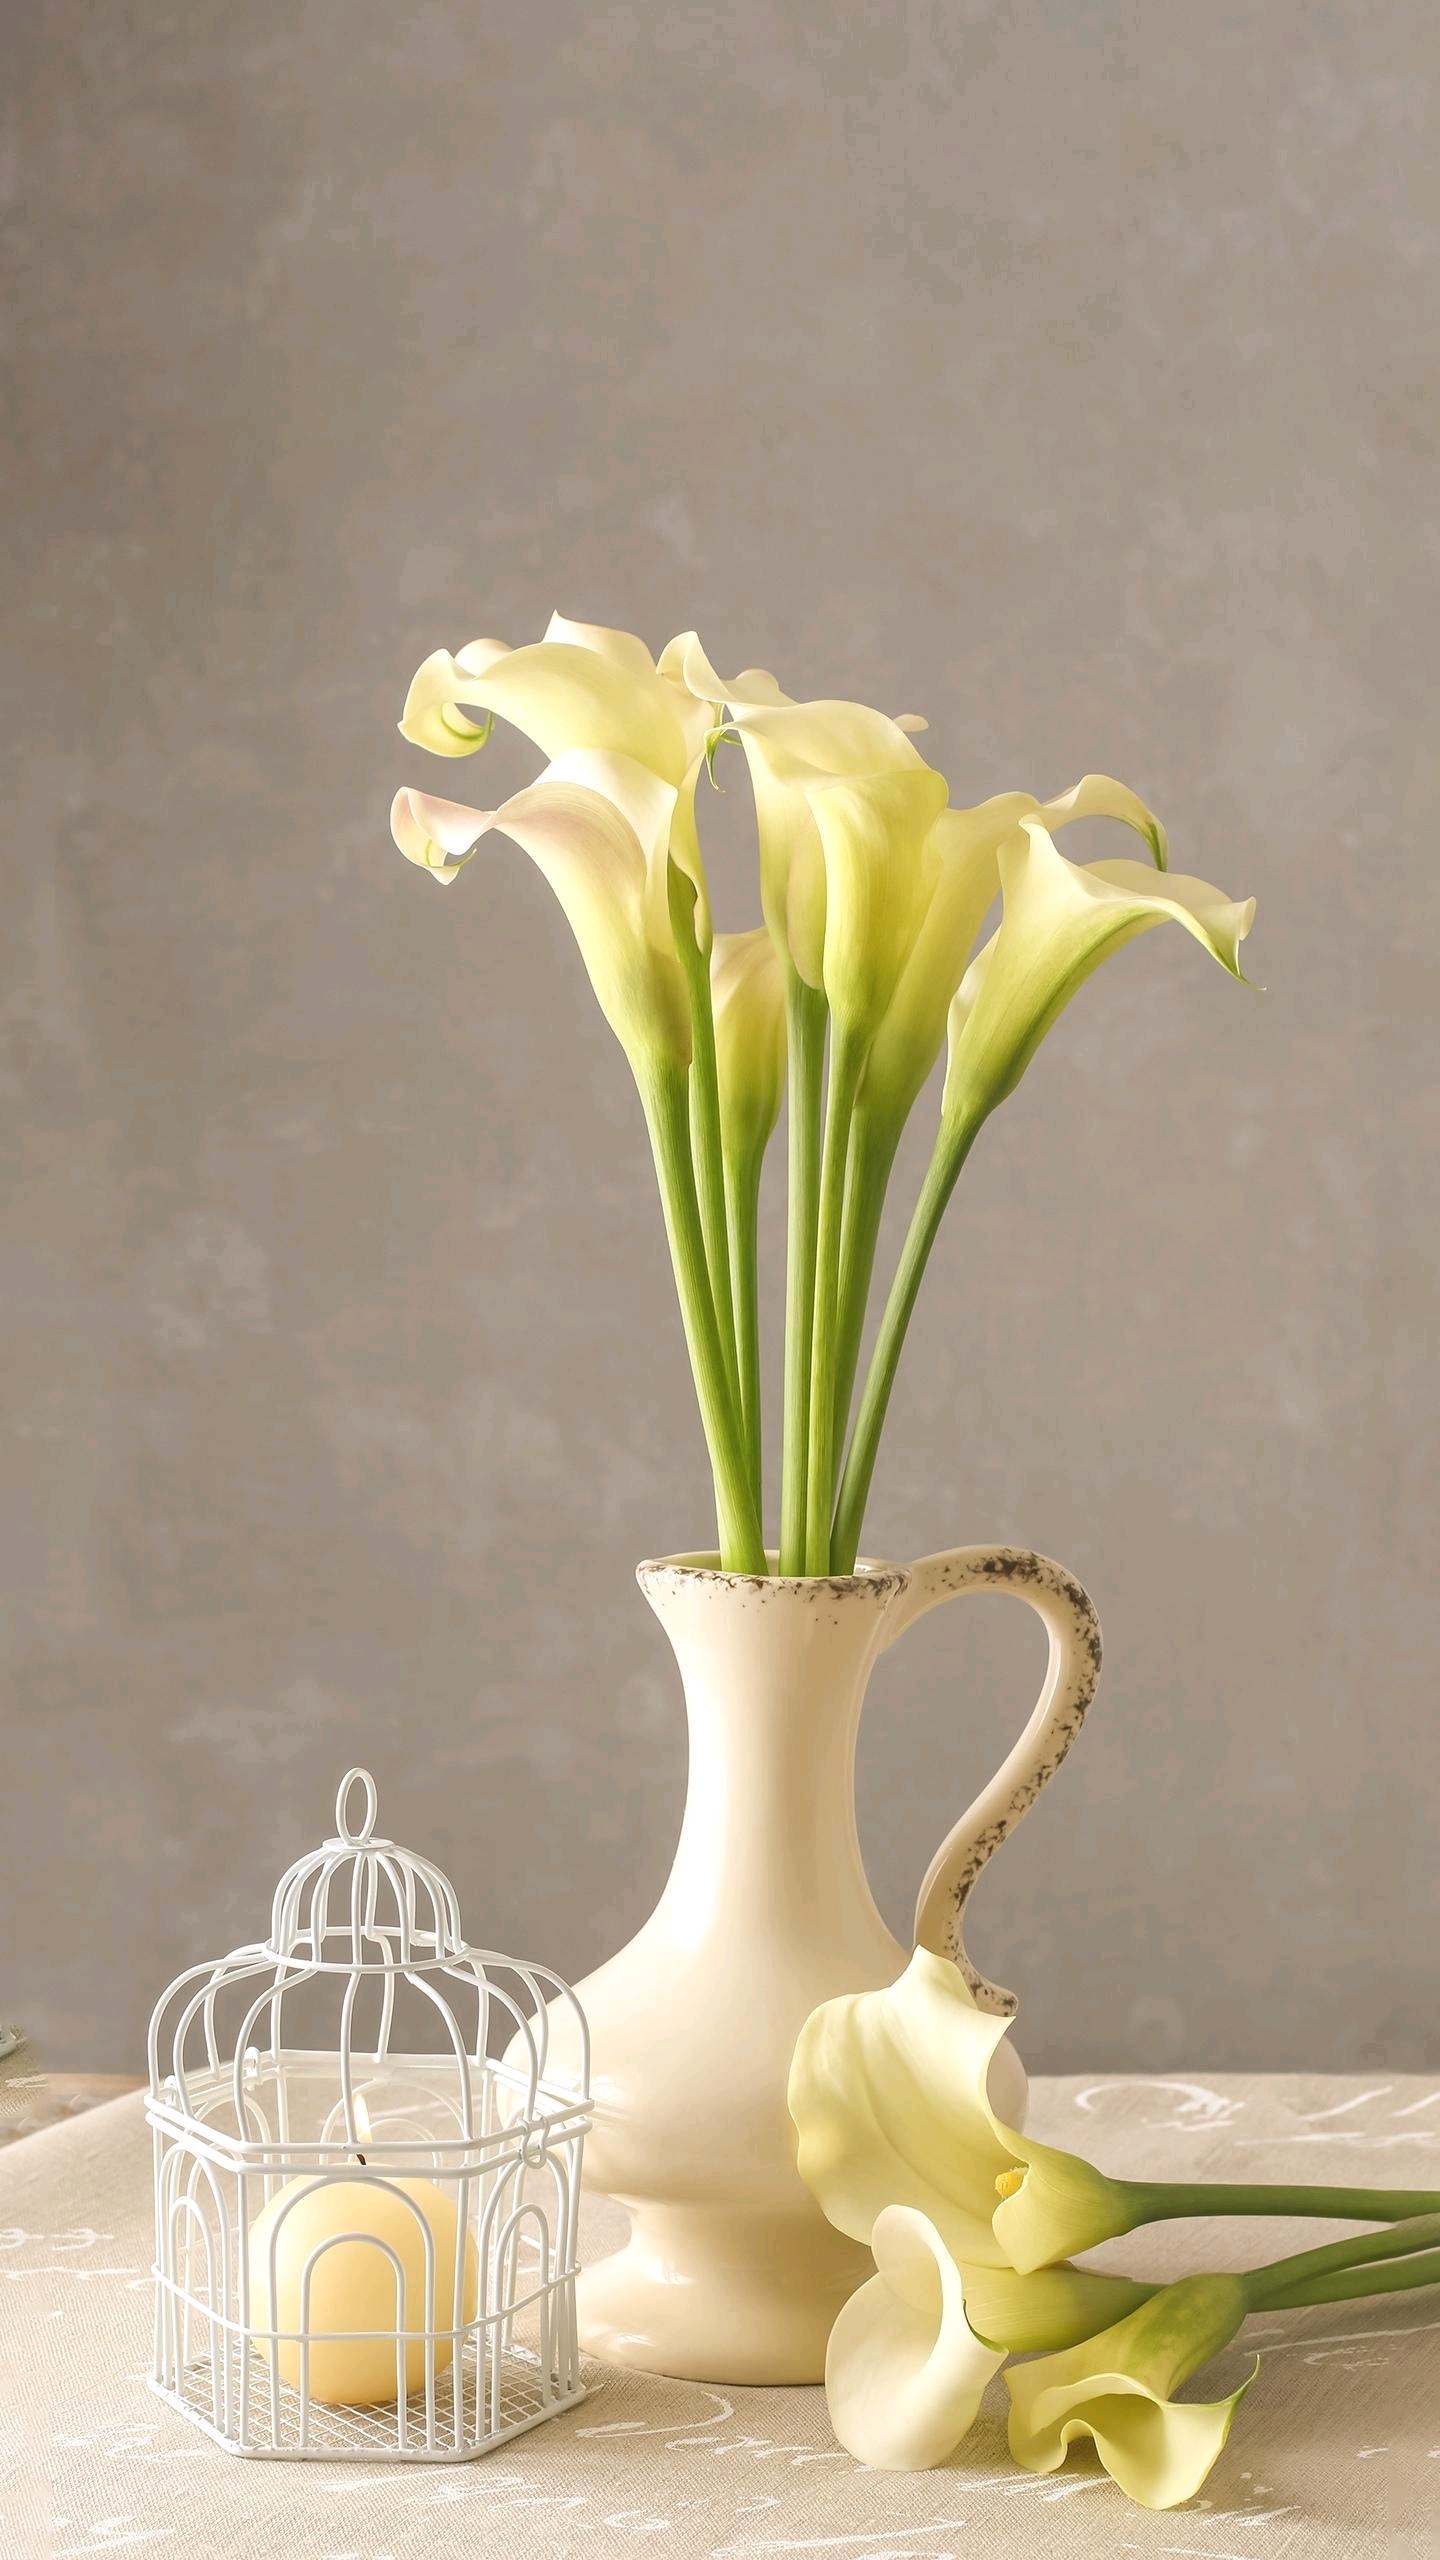 马蹄莲花语是纯洁与高贵 ,花朵绽放绚烂 ,线条舒展流畅,简约而不俗套.